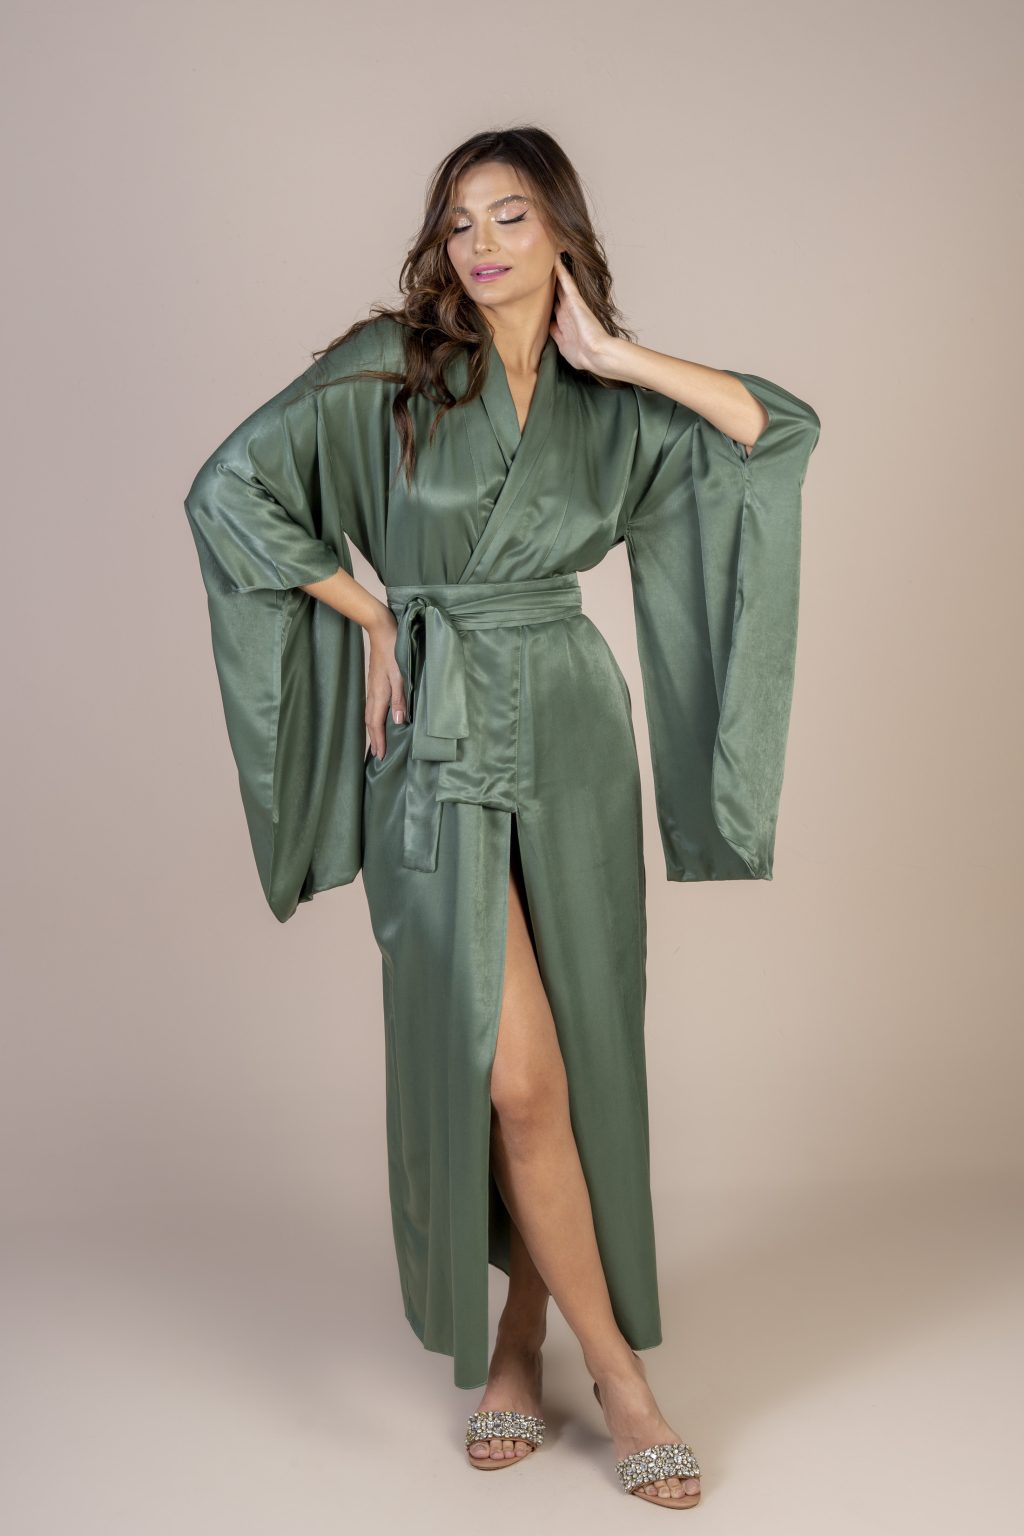 Mulher morena usando um kimono longo manga longa verde de viscose com bordado nas costas faixa para amarração na cintura exclusivo praticidade elegância conforto maria sanz kimono quimono